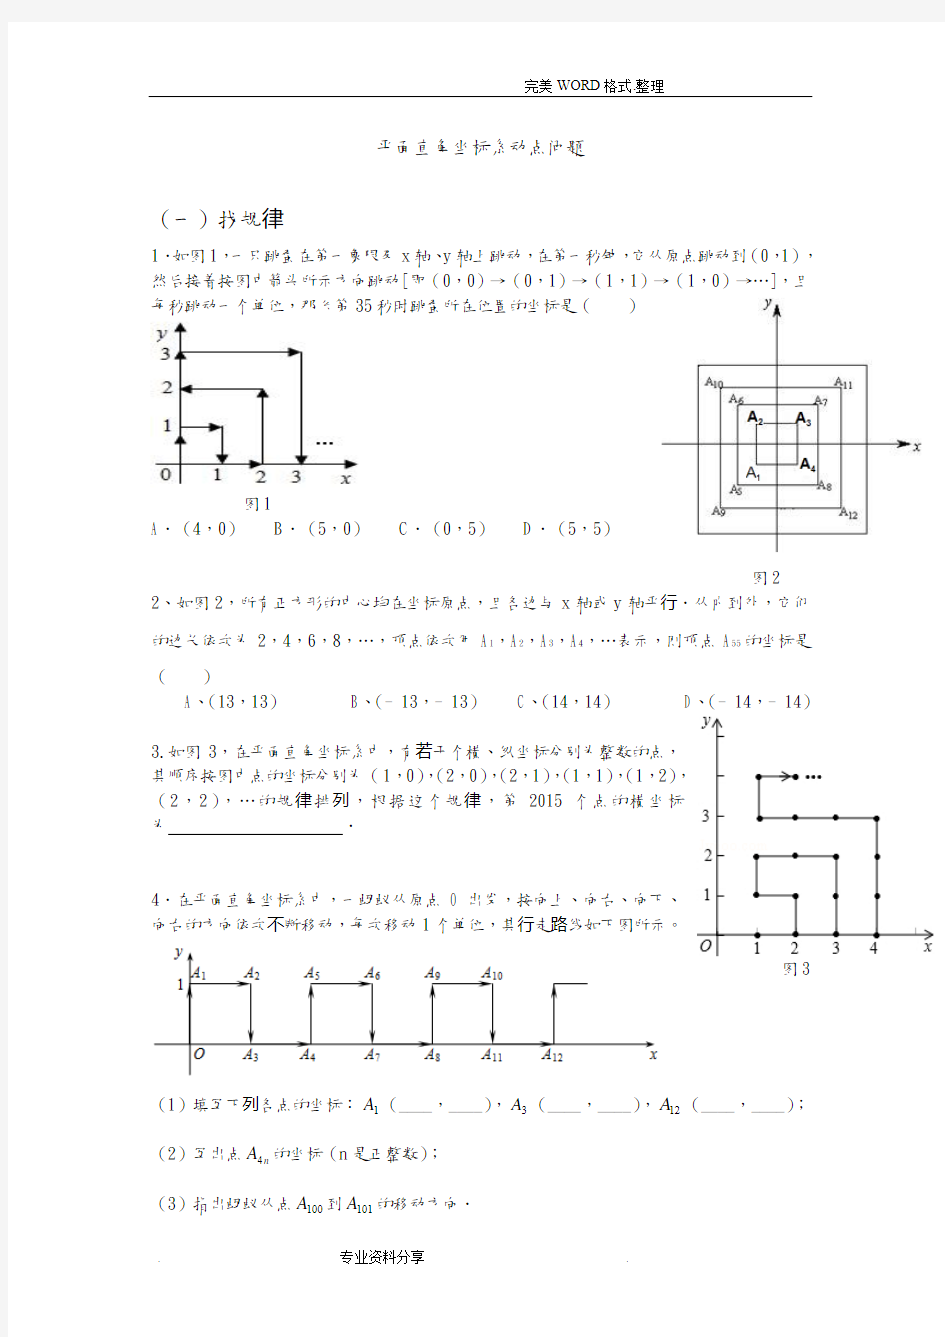 初一年级平面直角坐标系动点问题(经典难题)